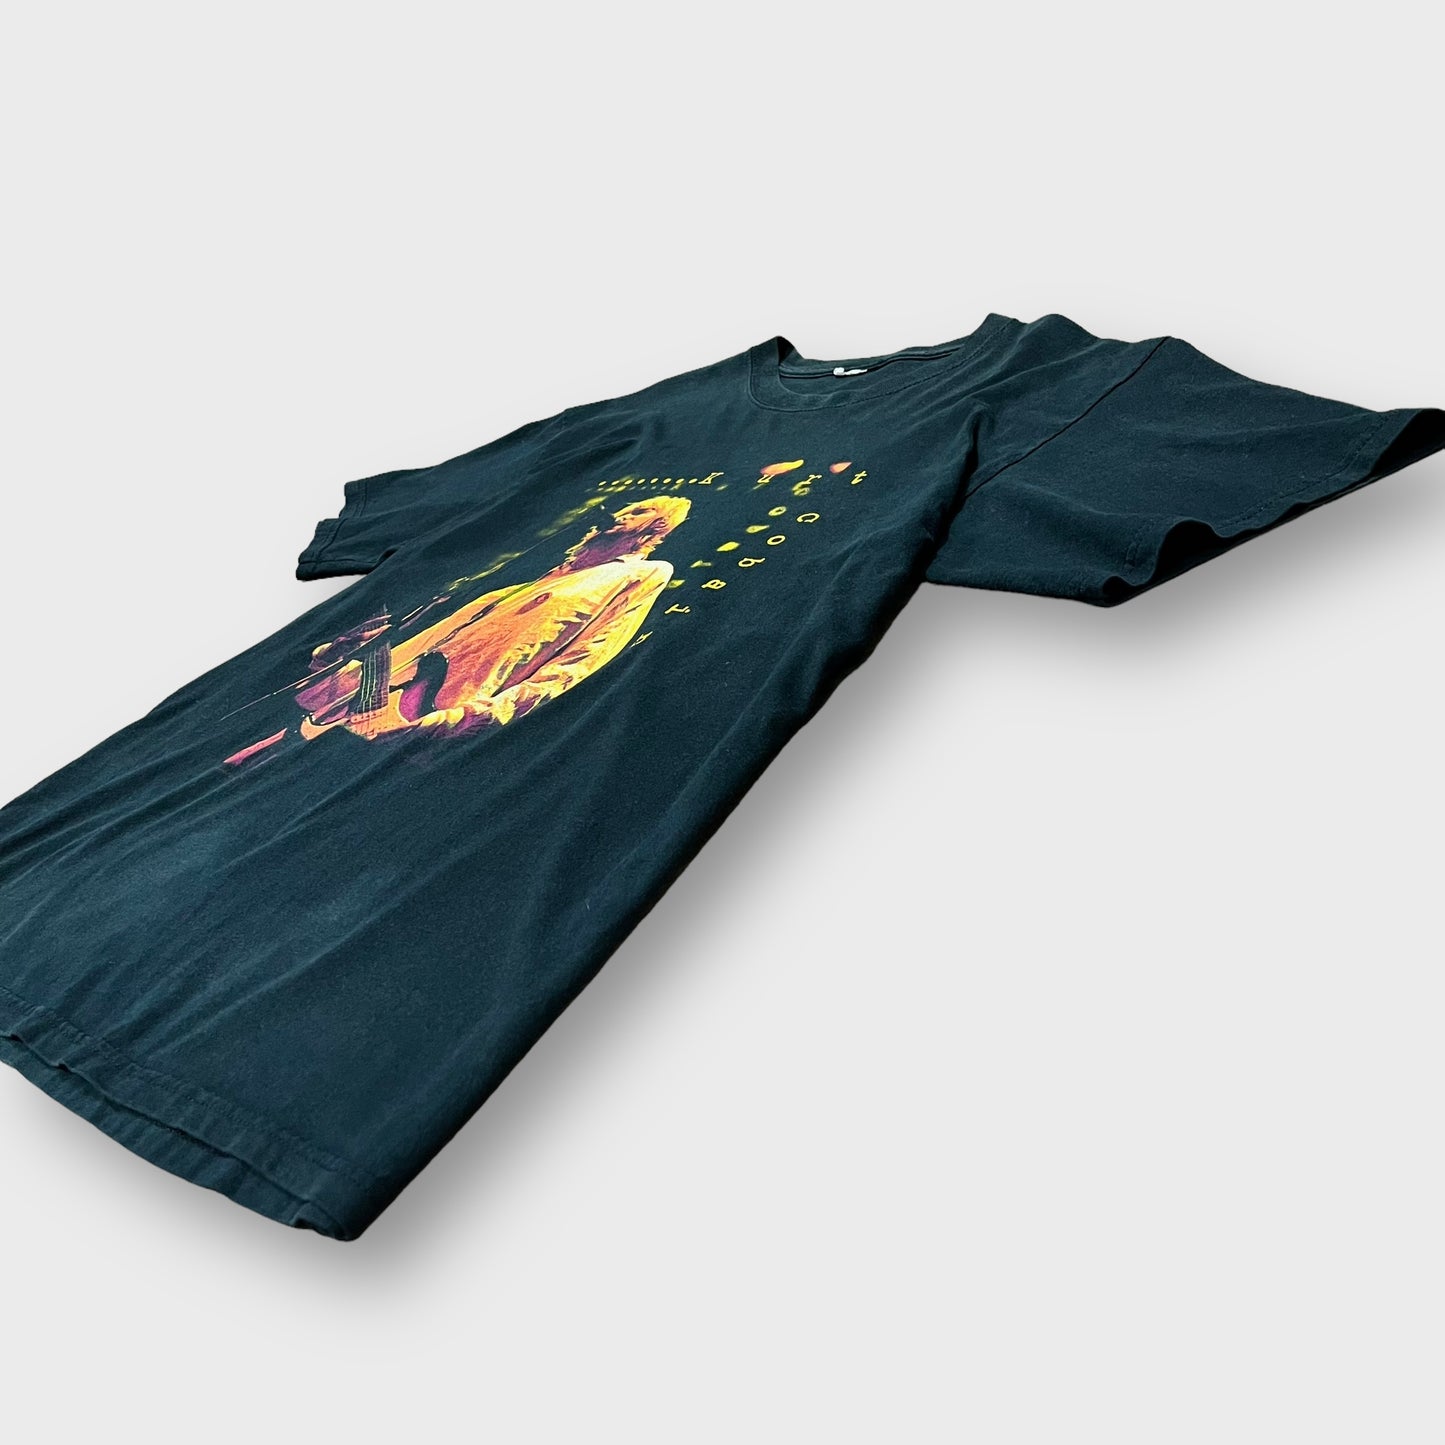 2004 “Kurt Cobain”
artist t-shirt